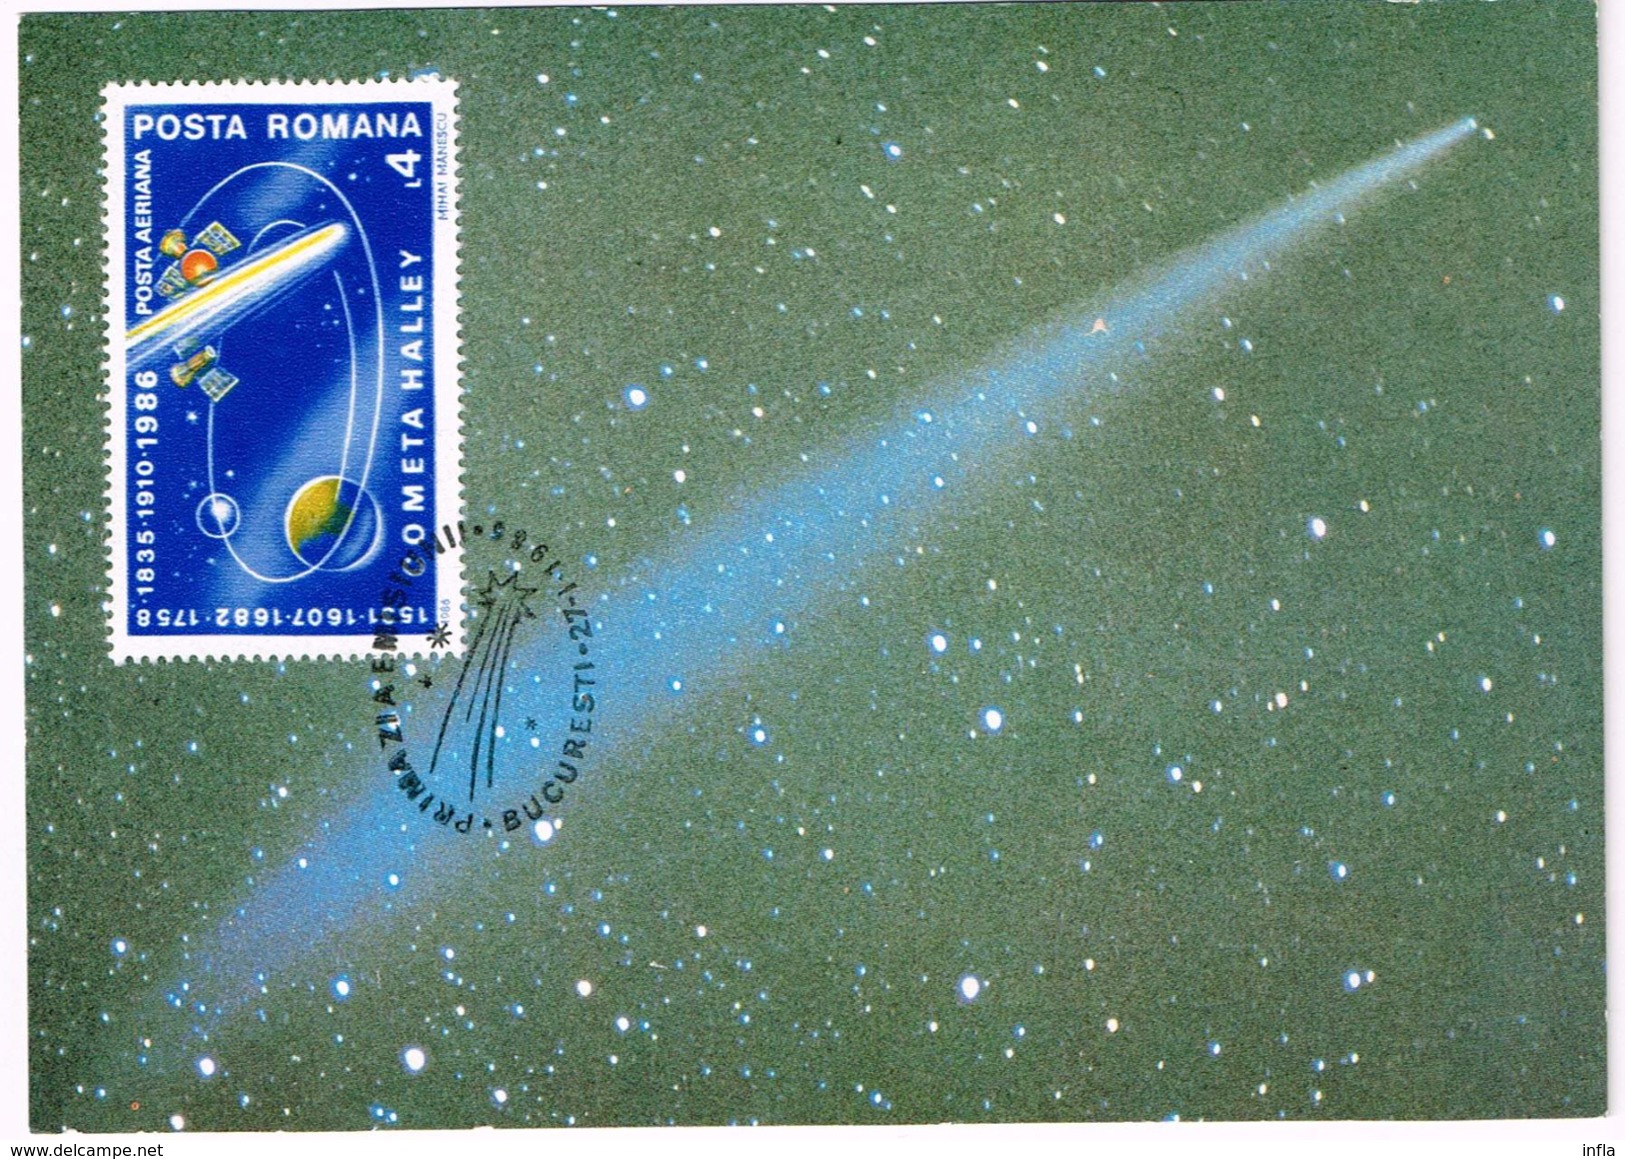 Sammlung zum Kometen Halley FDC, Ganzsachen, Sonderstempel .... 61 Artikel